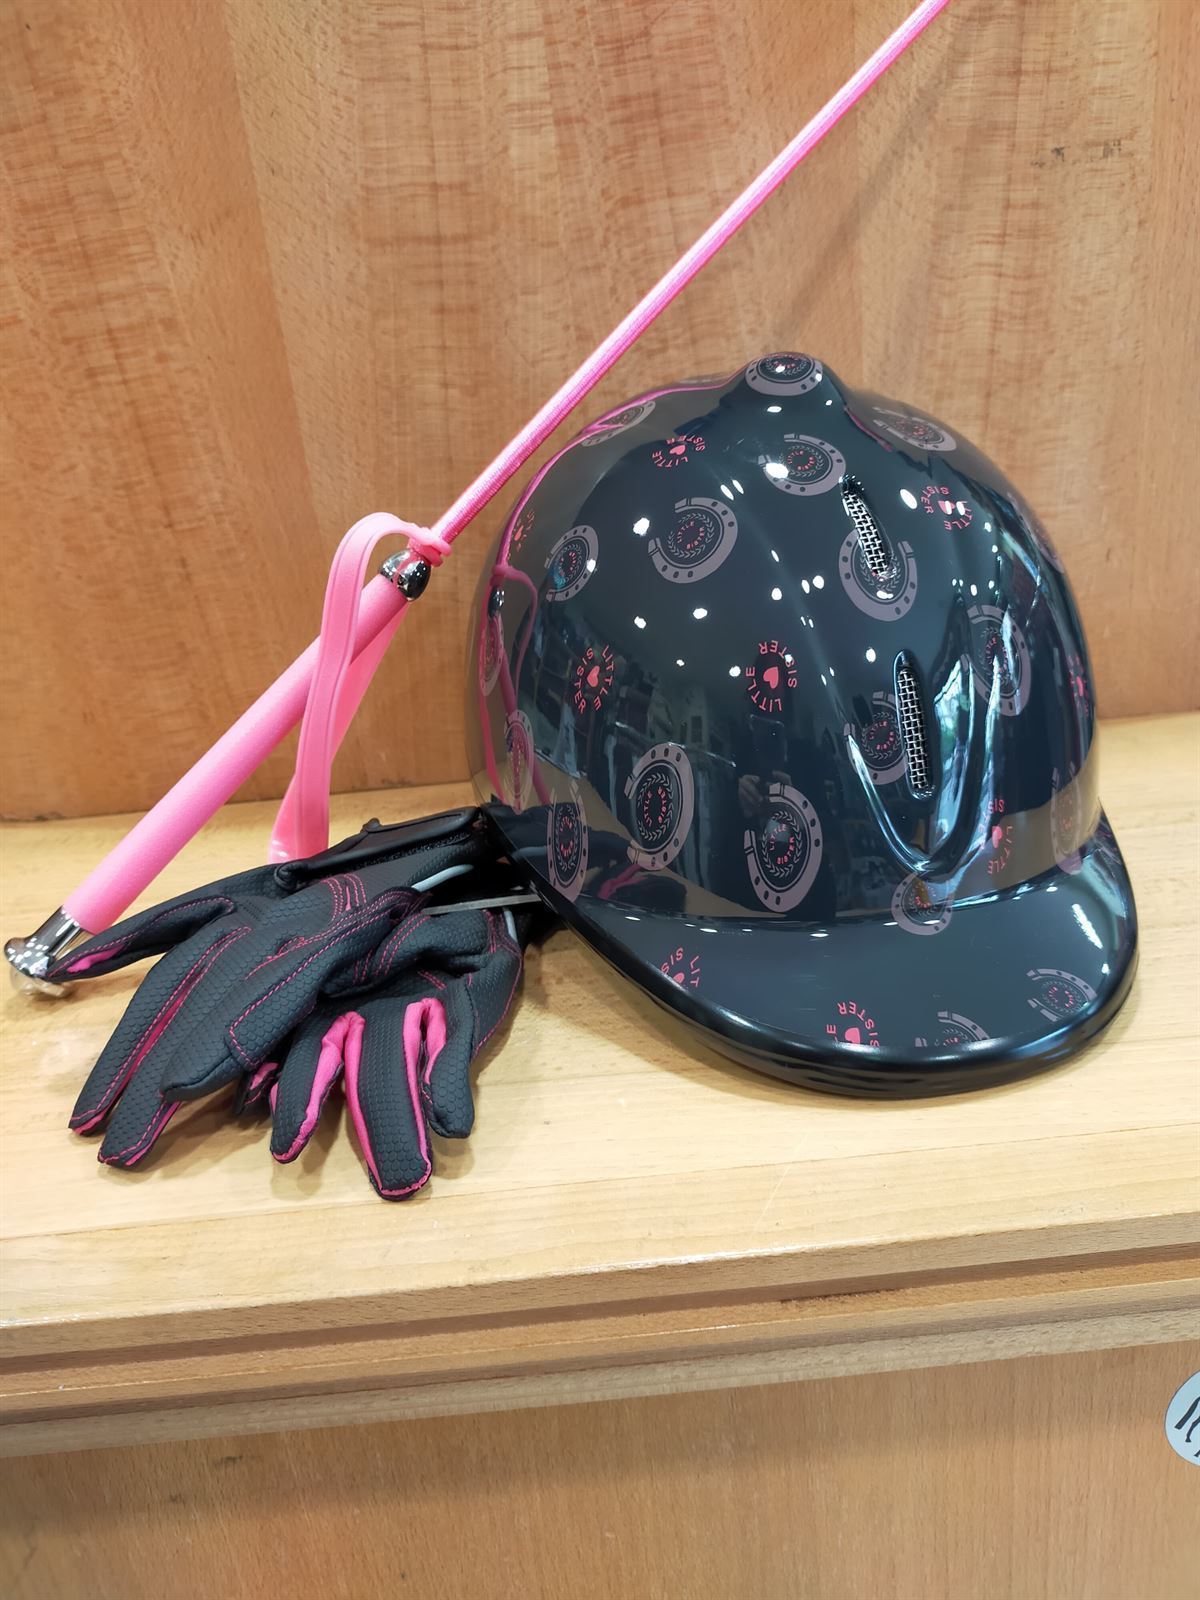 Casco HKM Sports Equipment Champ, color negro con herraduras rosas, talla S (52-55 cm) - Imagen 4